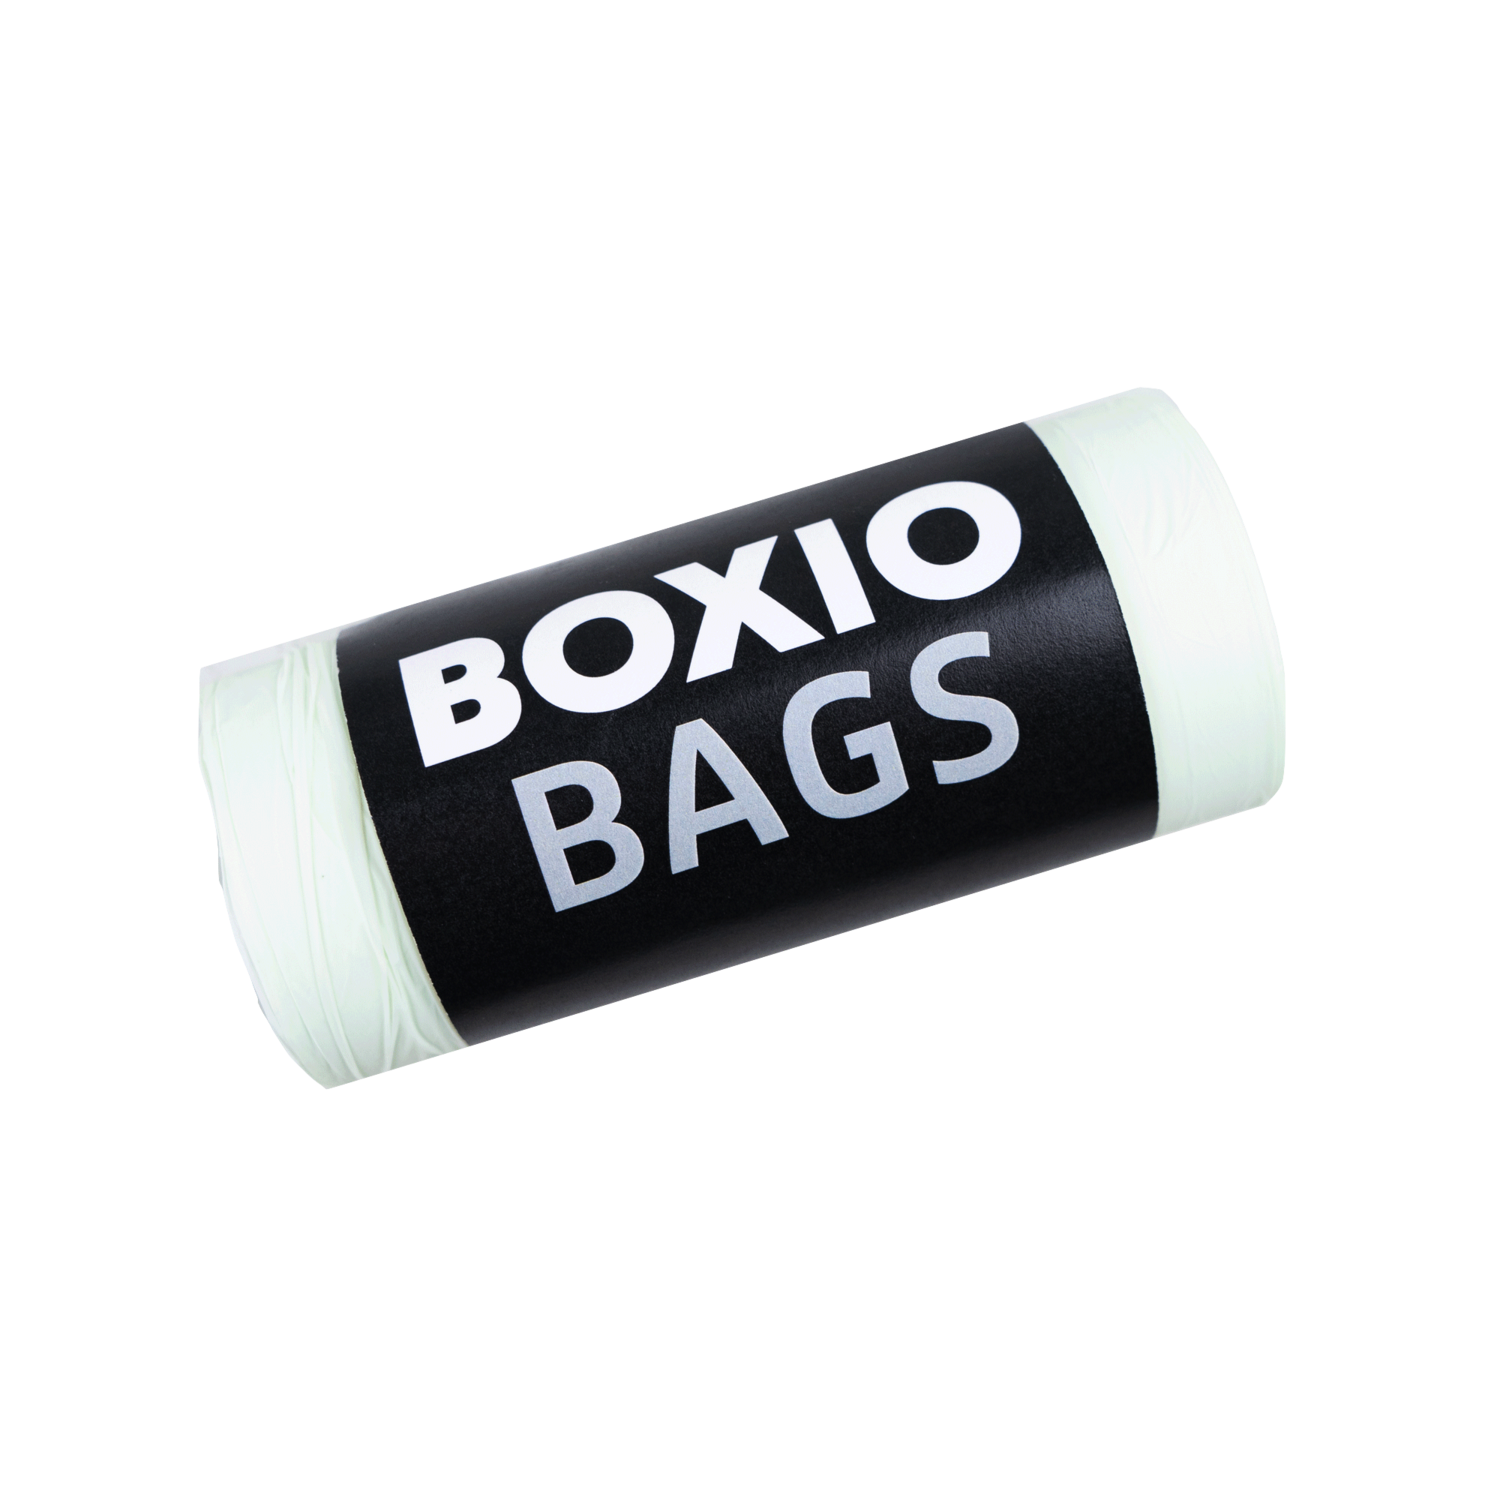 BOXIO - BIO BAGS